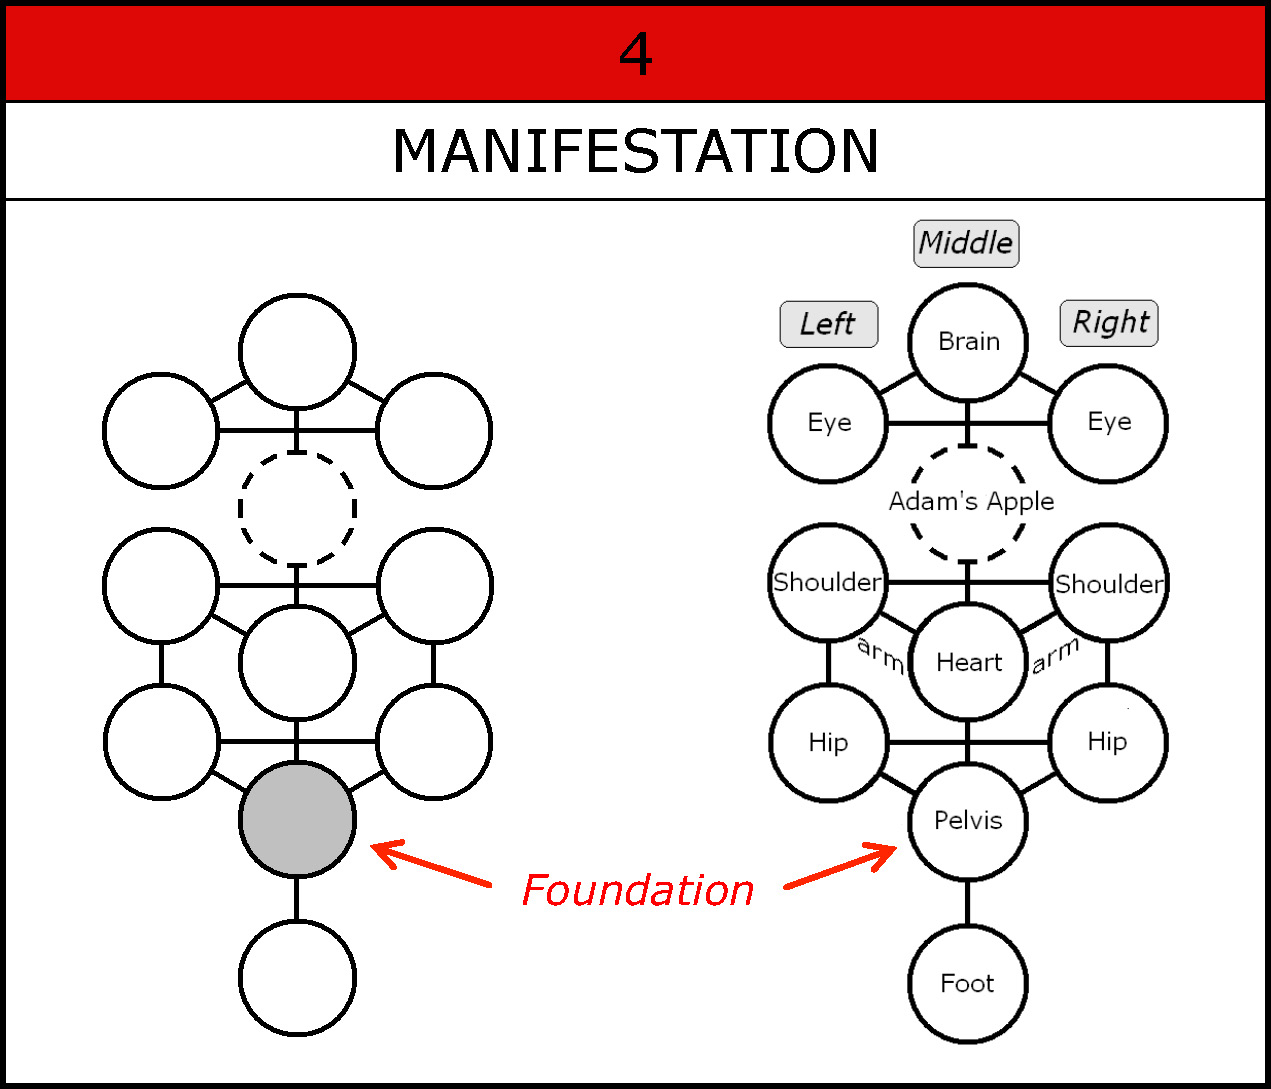 Foundation-Manifestation